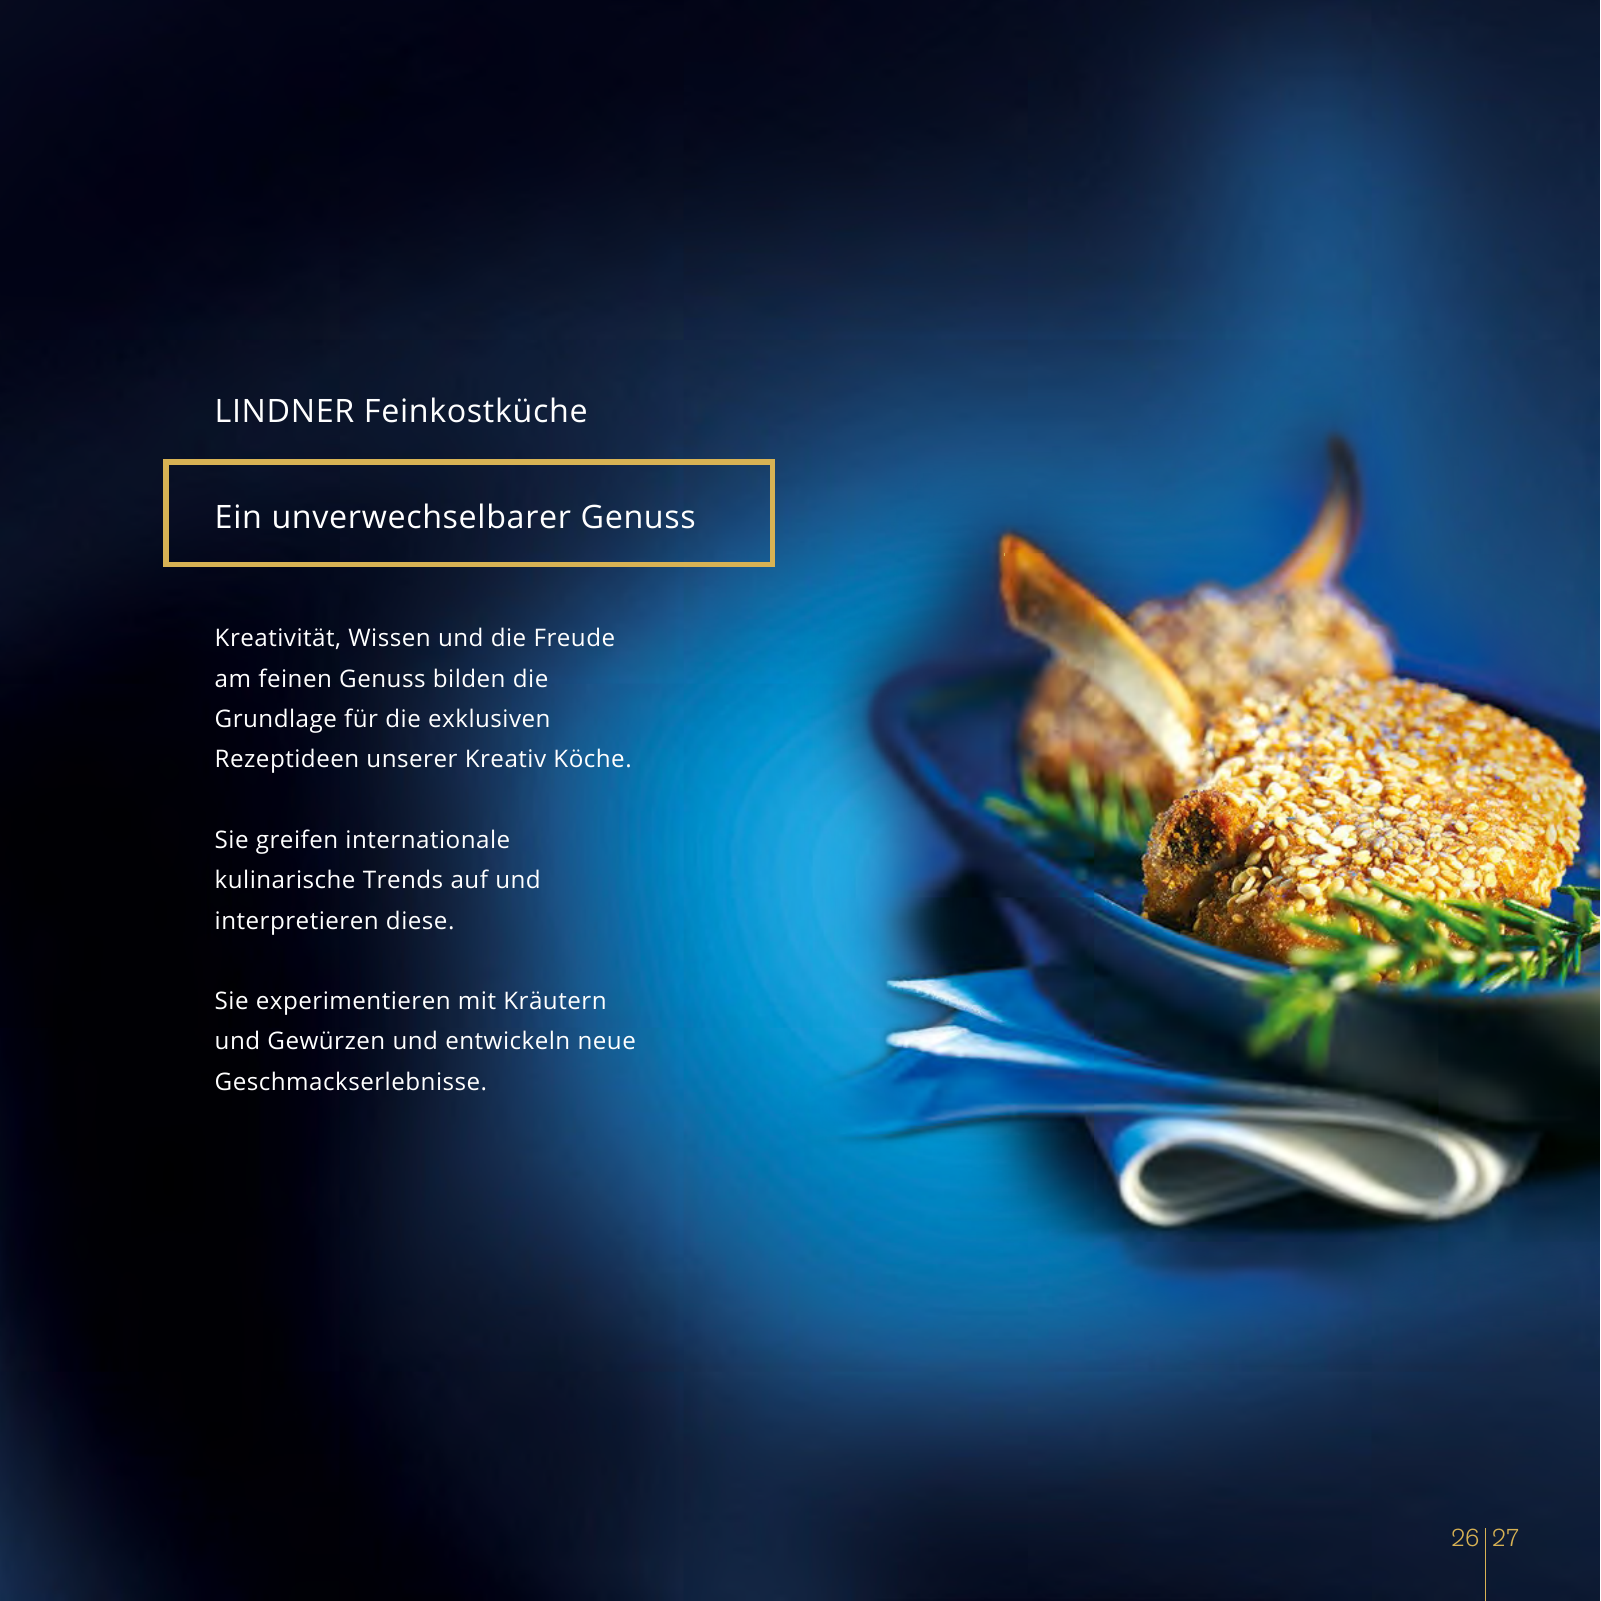 Vorschau Catering Katalog 2018/2019 Seite 27